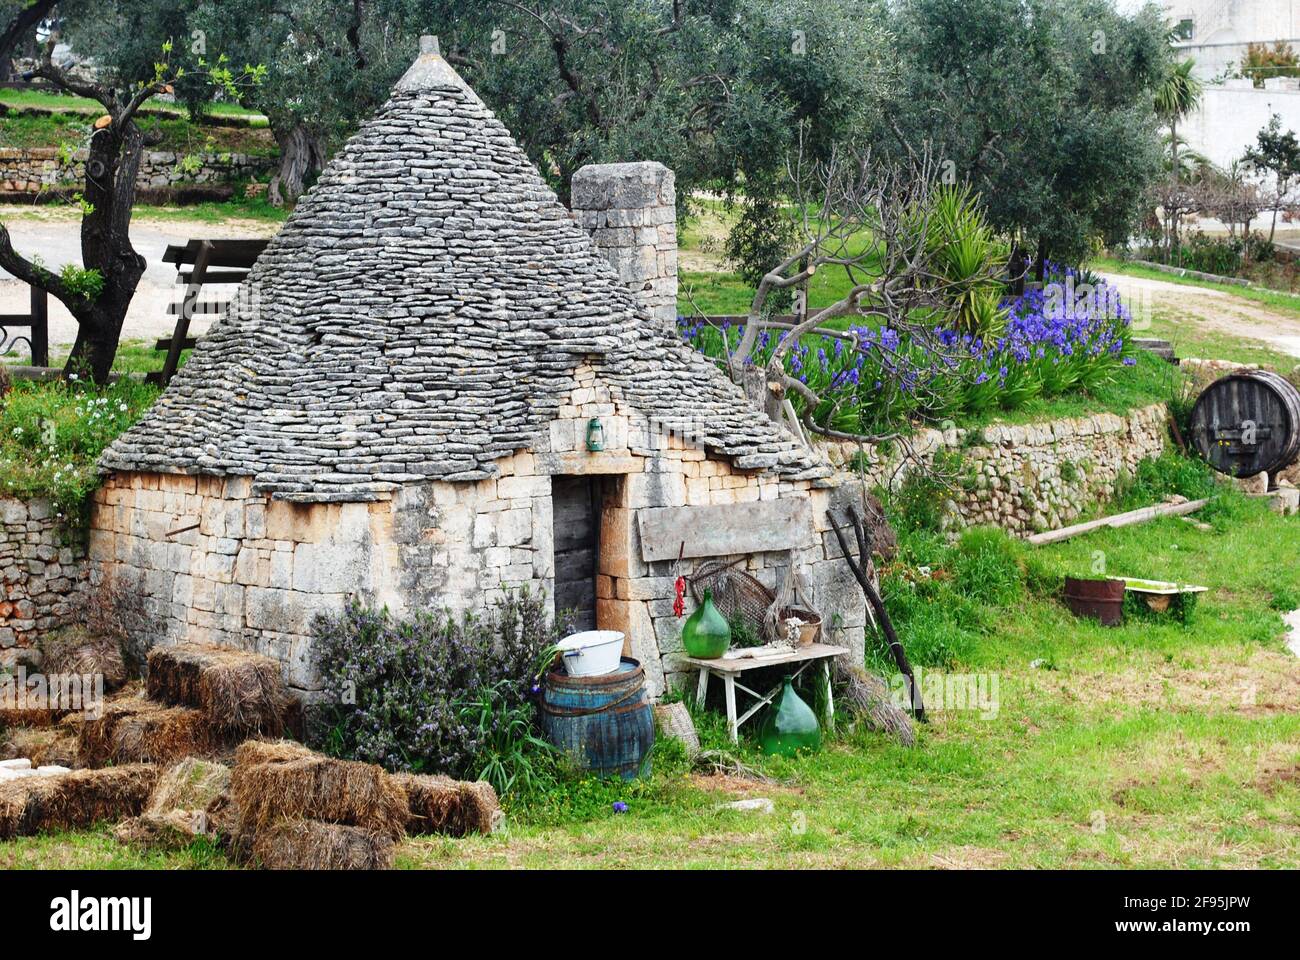 Una casa tradicional, de piedra, cónica Trullo en Alberobello, Bari, Italia. Alberobello es una ciudad de la región italiana de Apulia conocida por sus trullos. Foto de stock